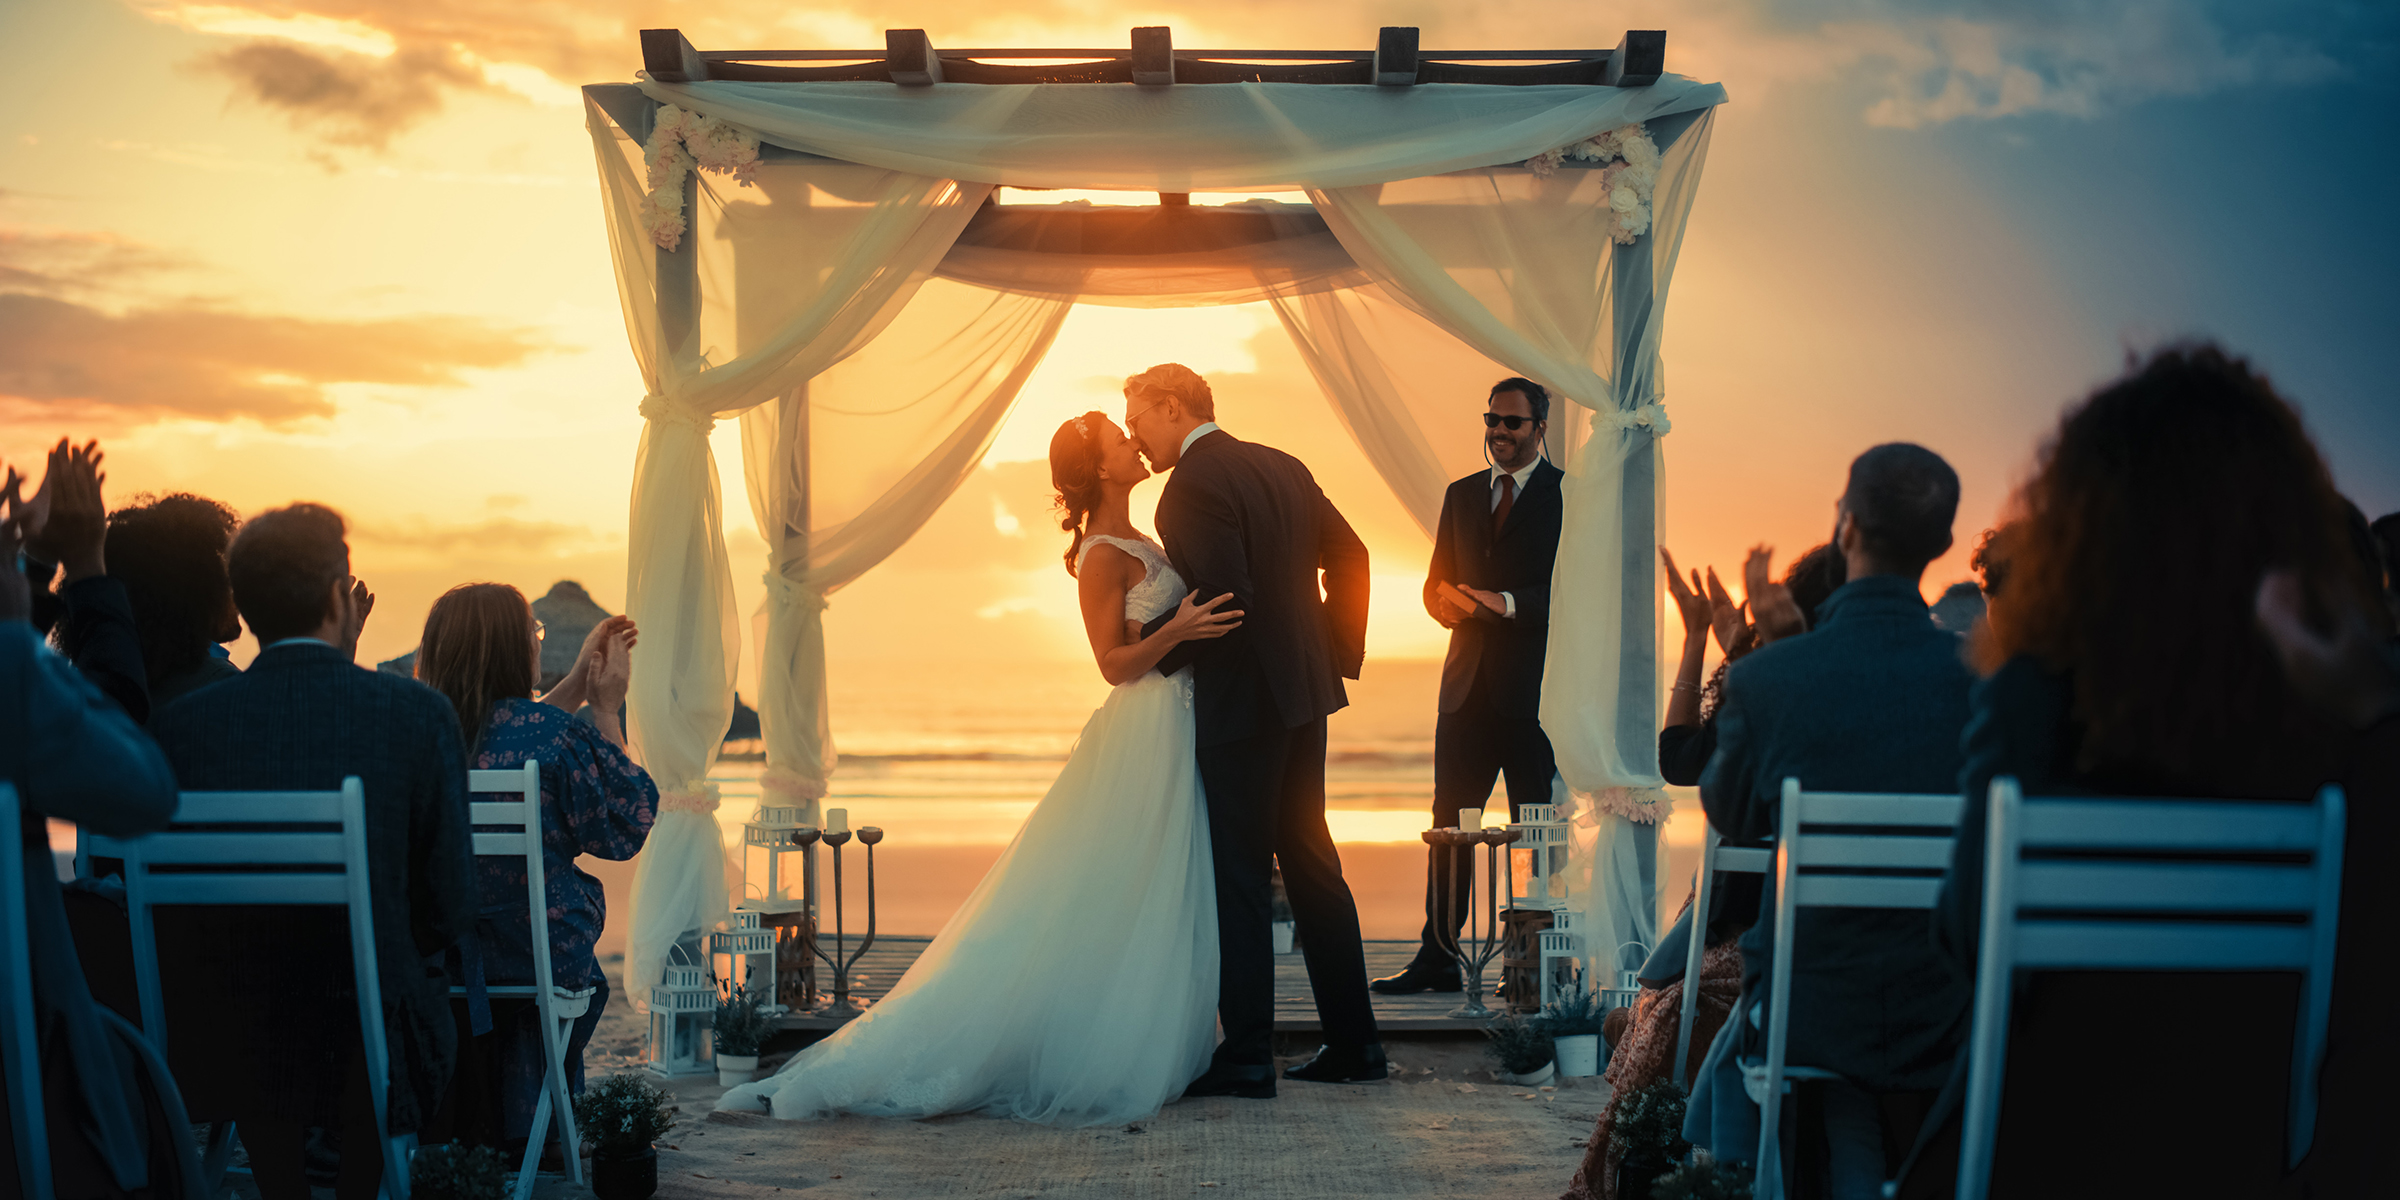 Una boda junto a la playa | Fuente: Shutterstock